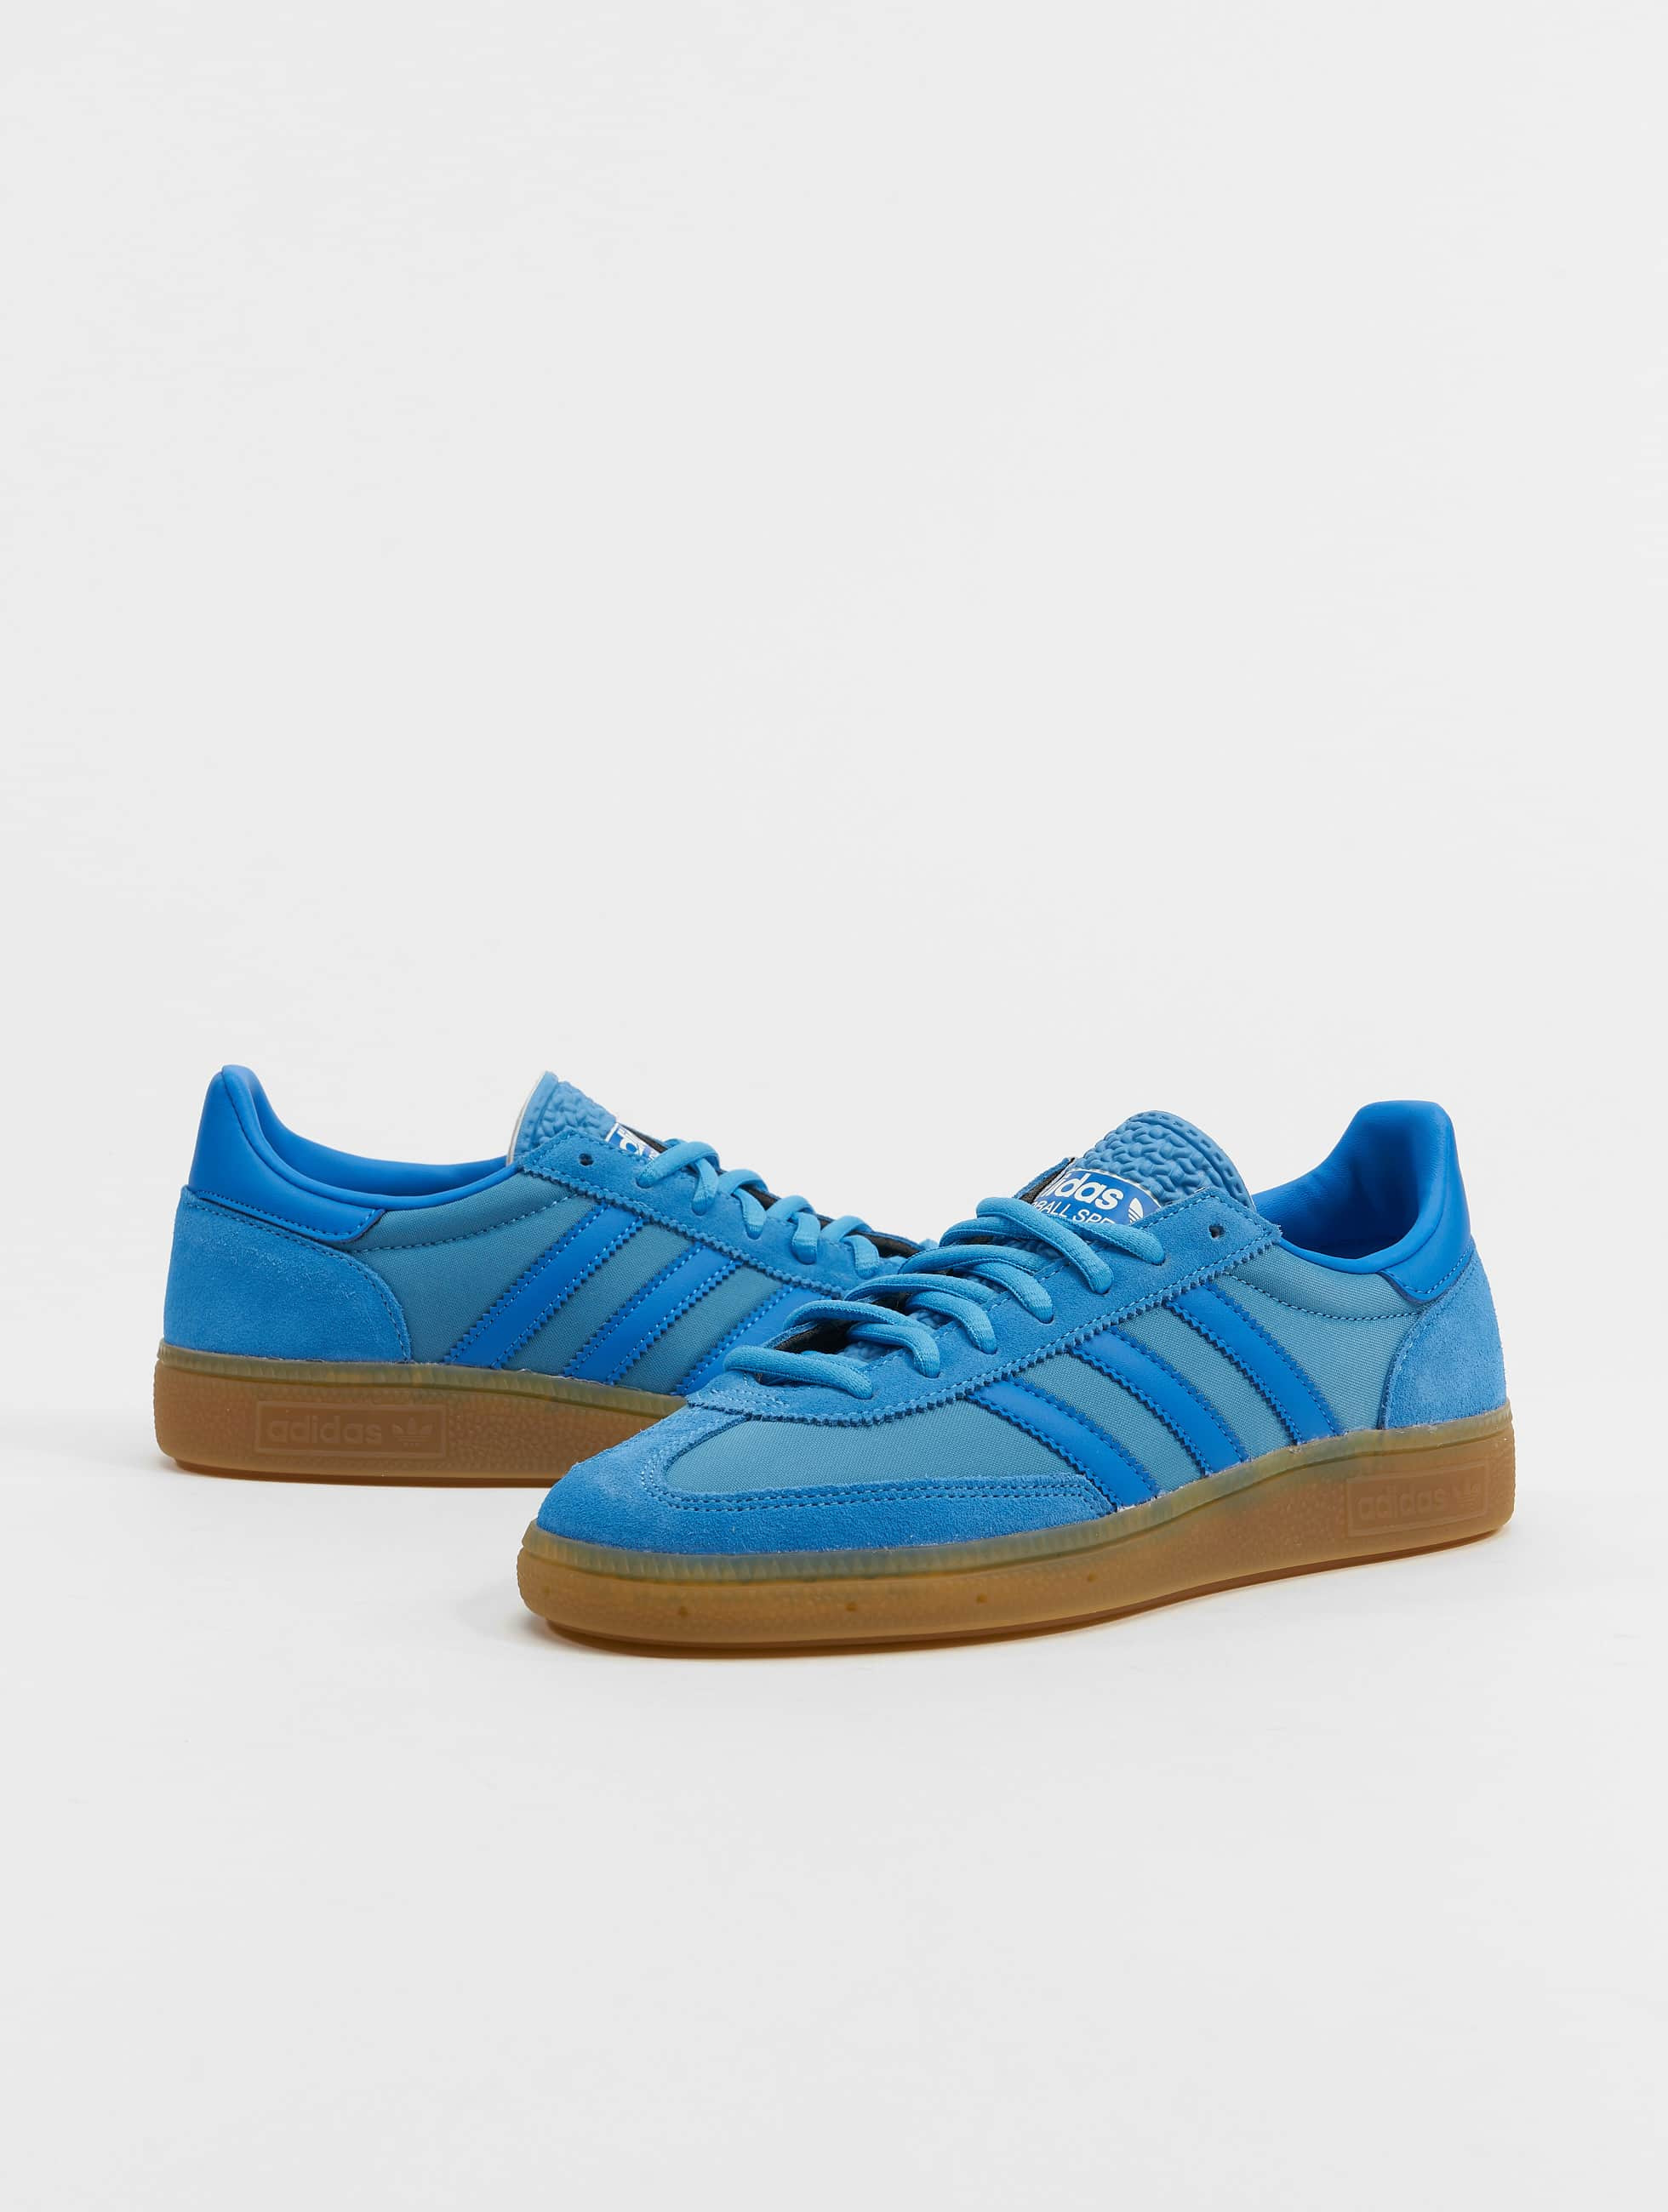 voordelig Nylon sextant adidas Originals schoen / sneaker Handball Spezial in blauw 1000820